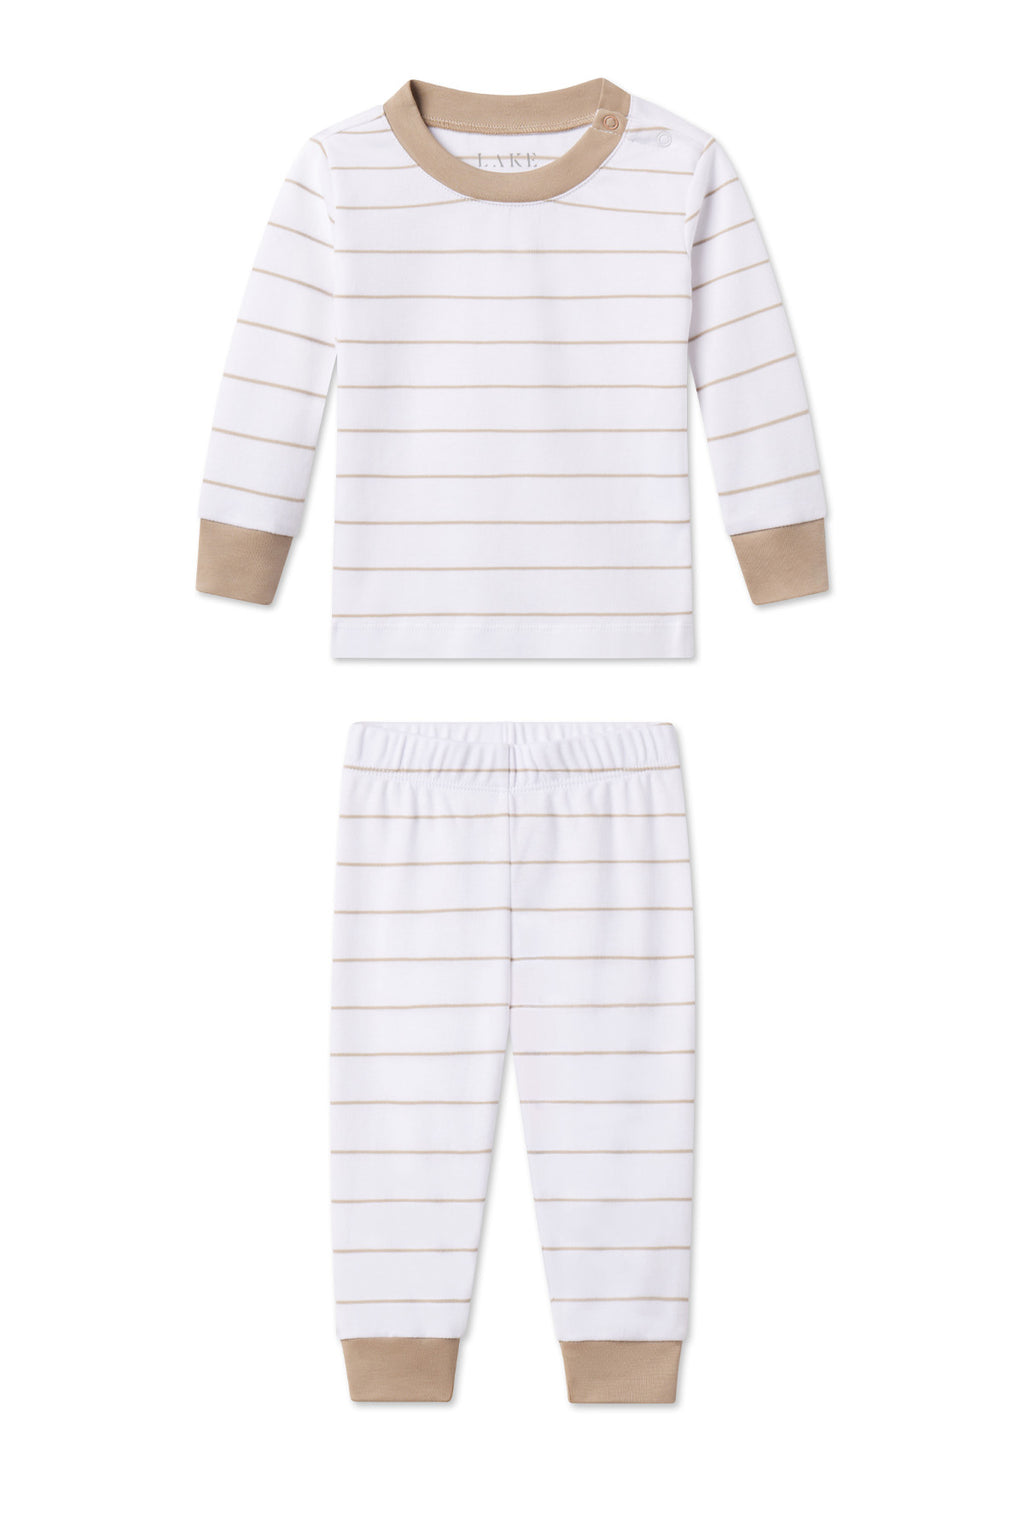 LAKE | Baby | Pima Cotton Pajamas | Driftwood Stripe Baby Long-Long Set